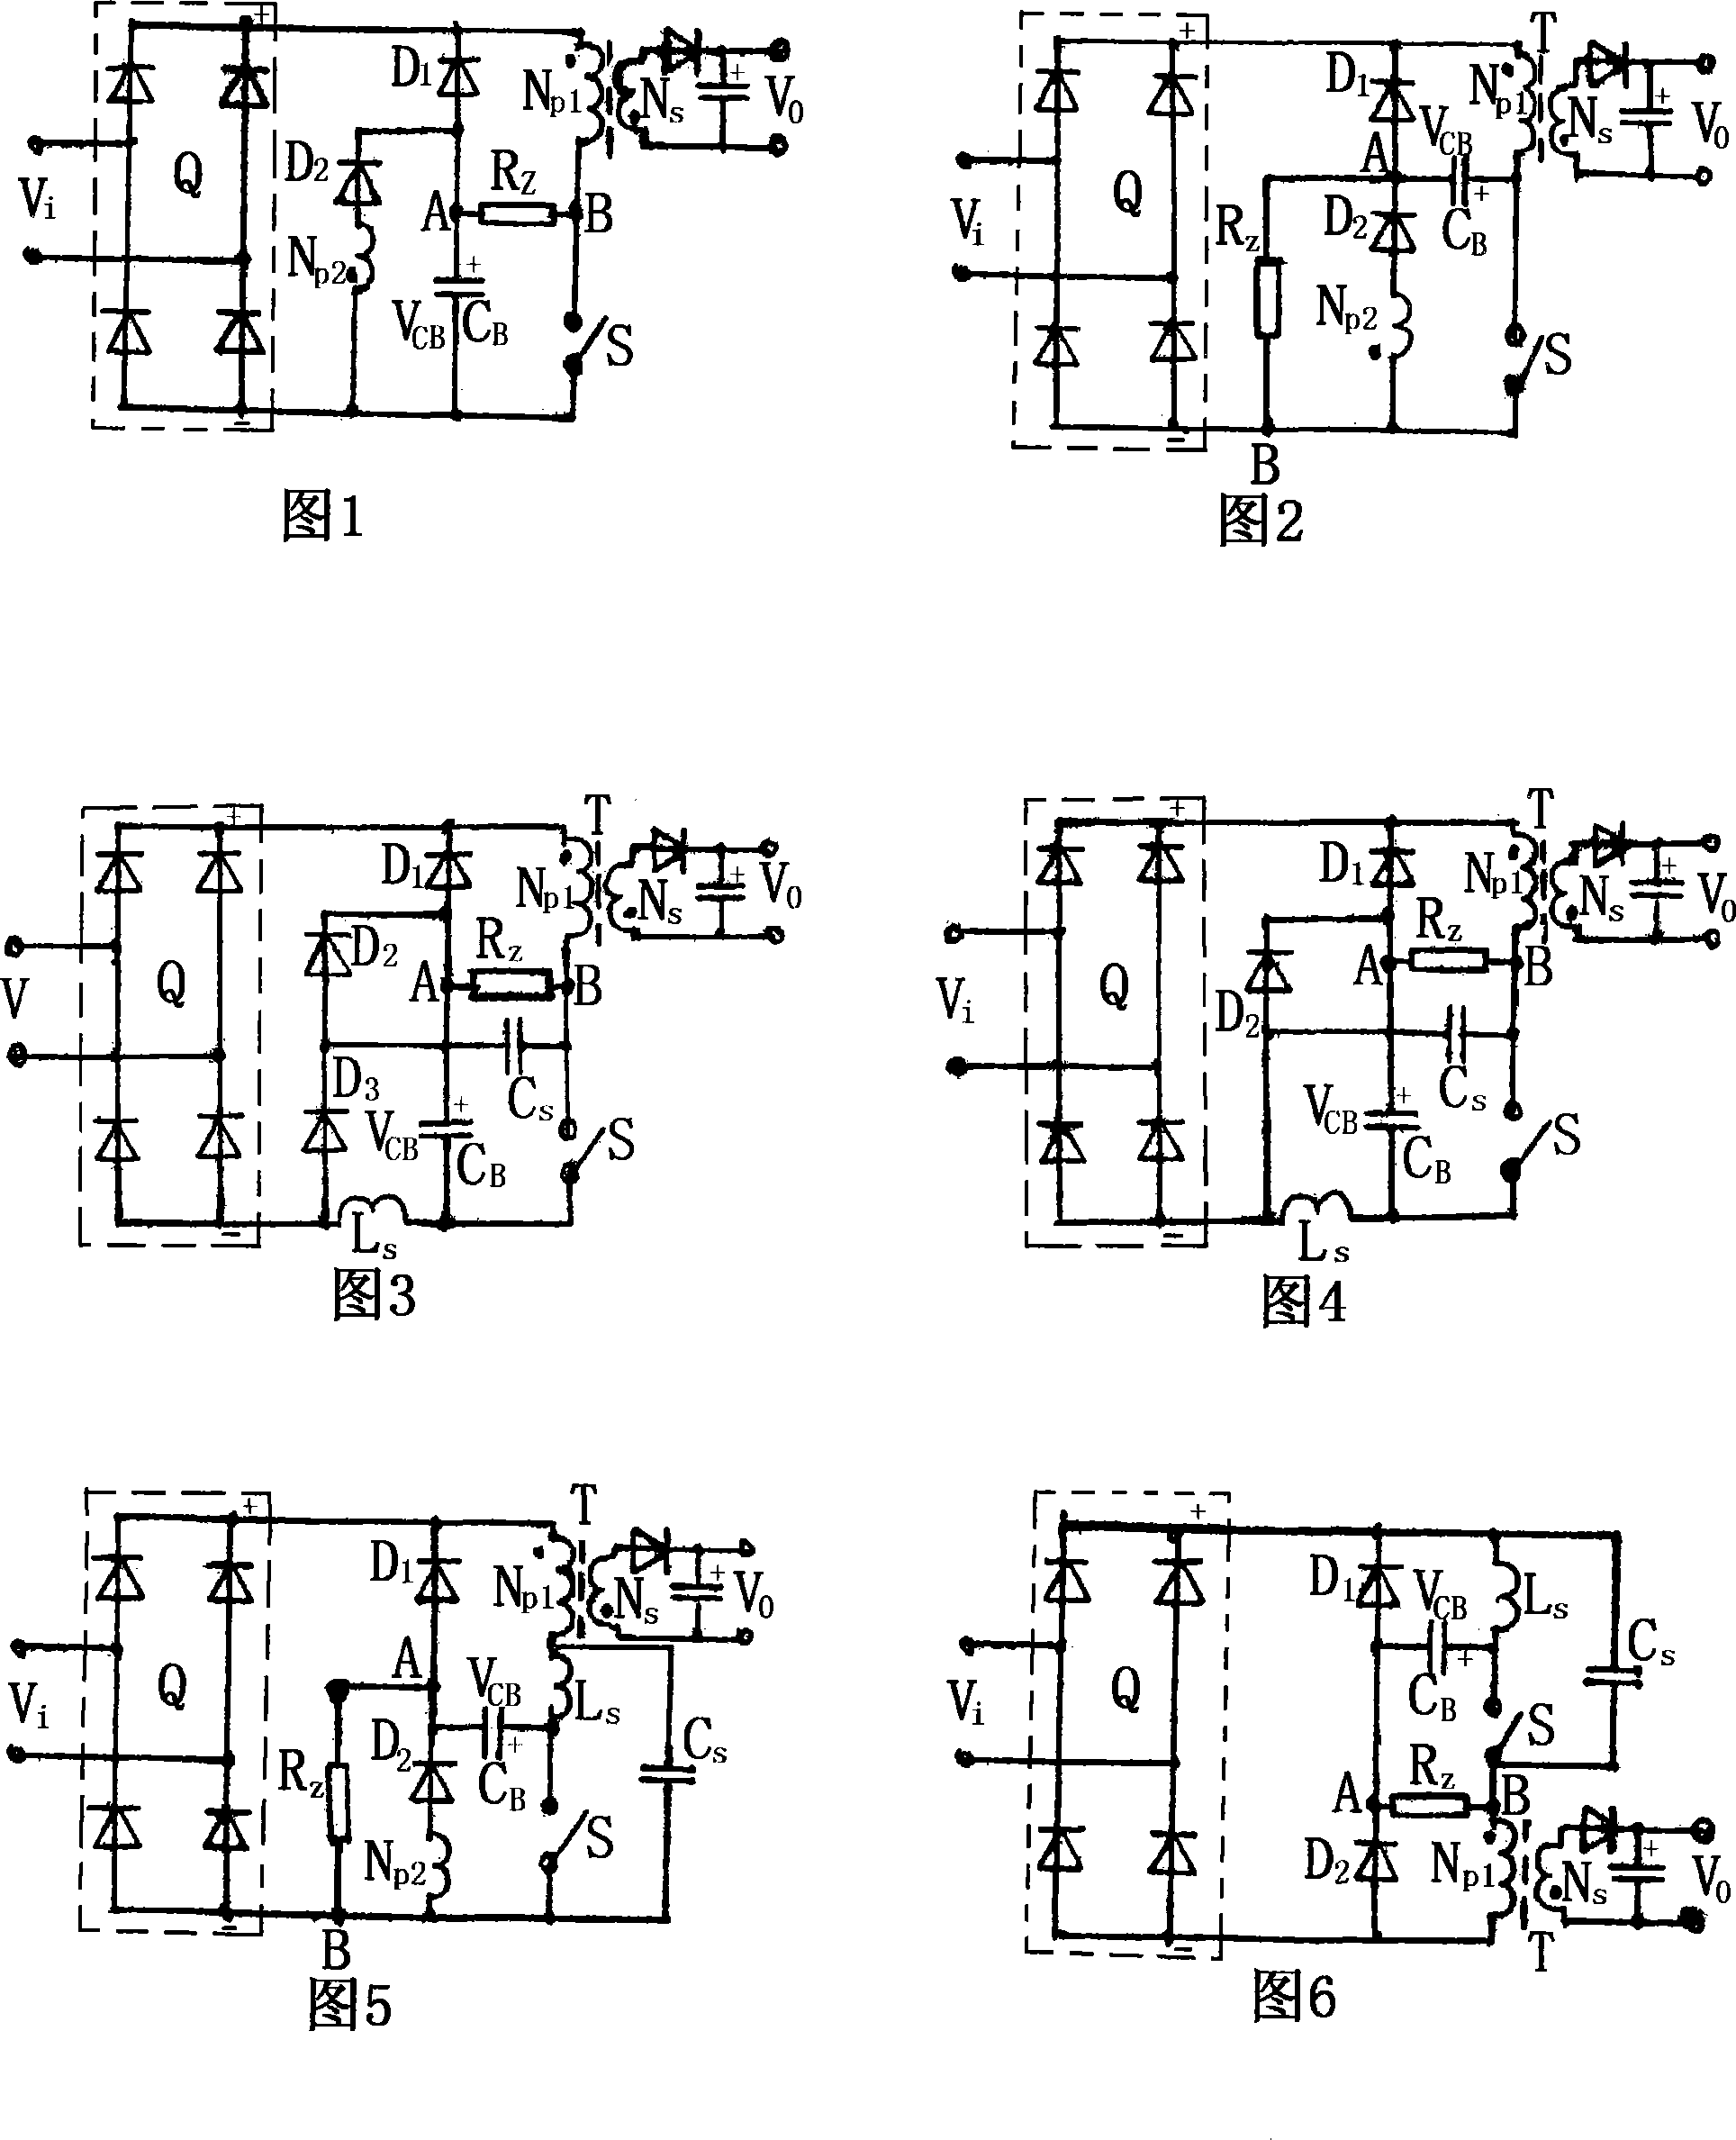 Single-level power factor correction converter circuit